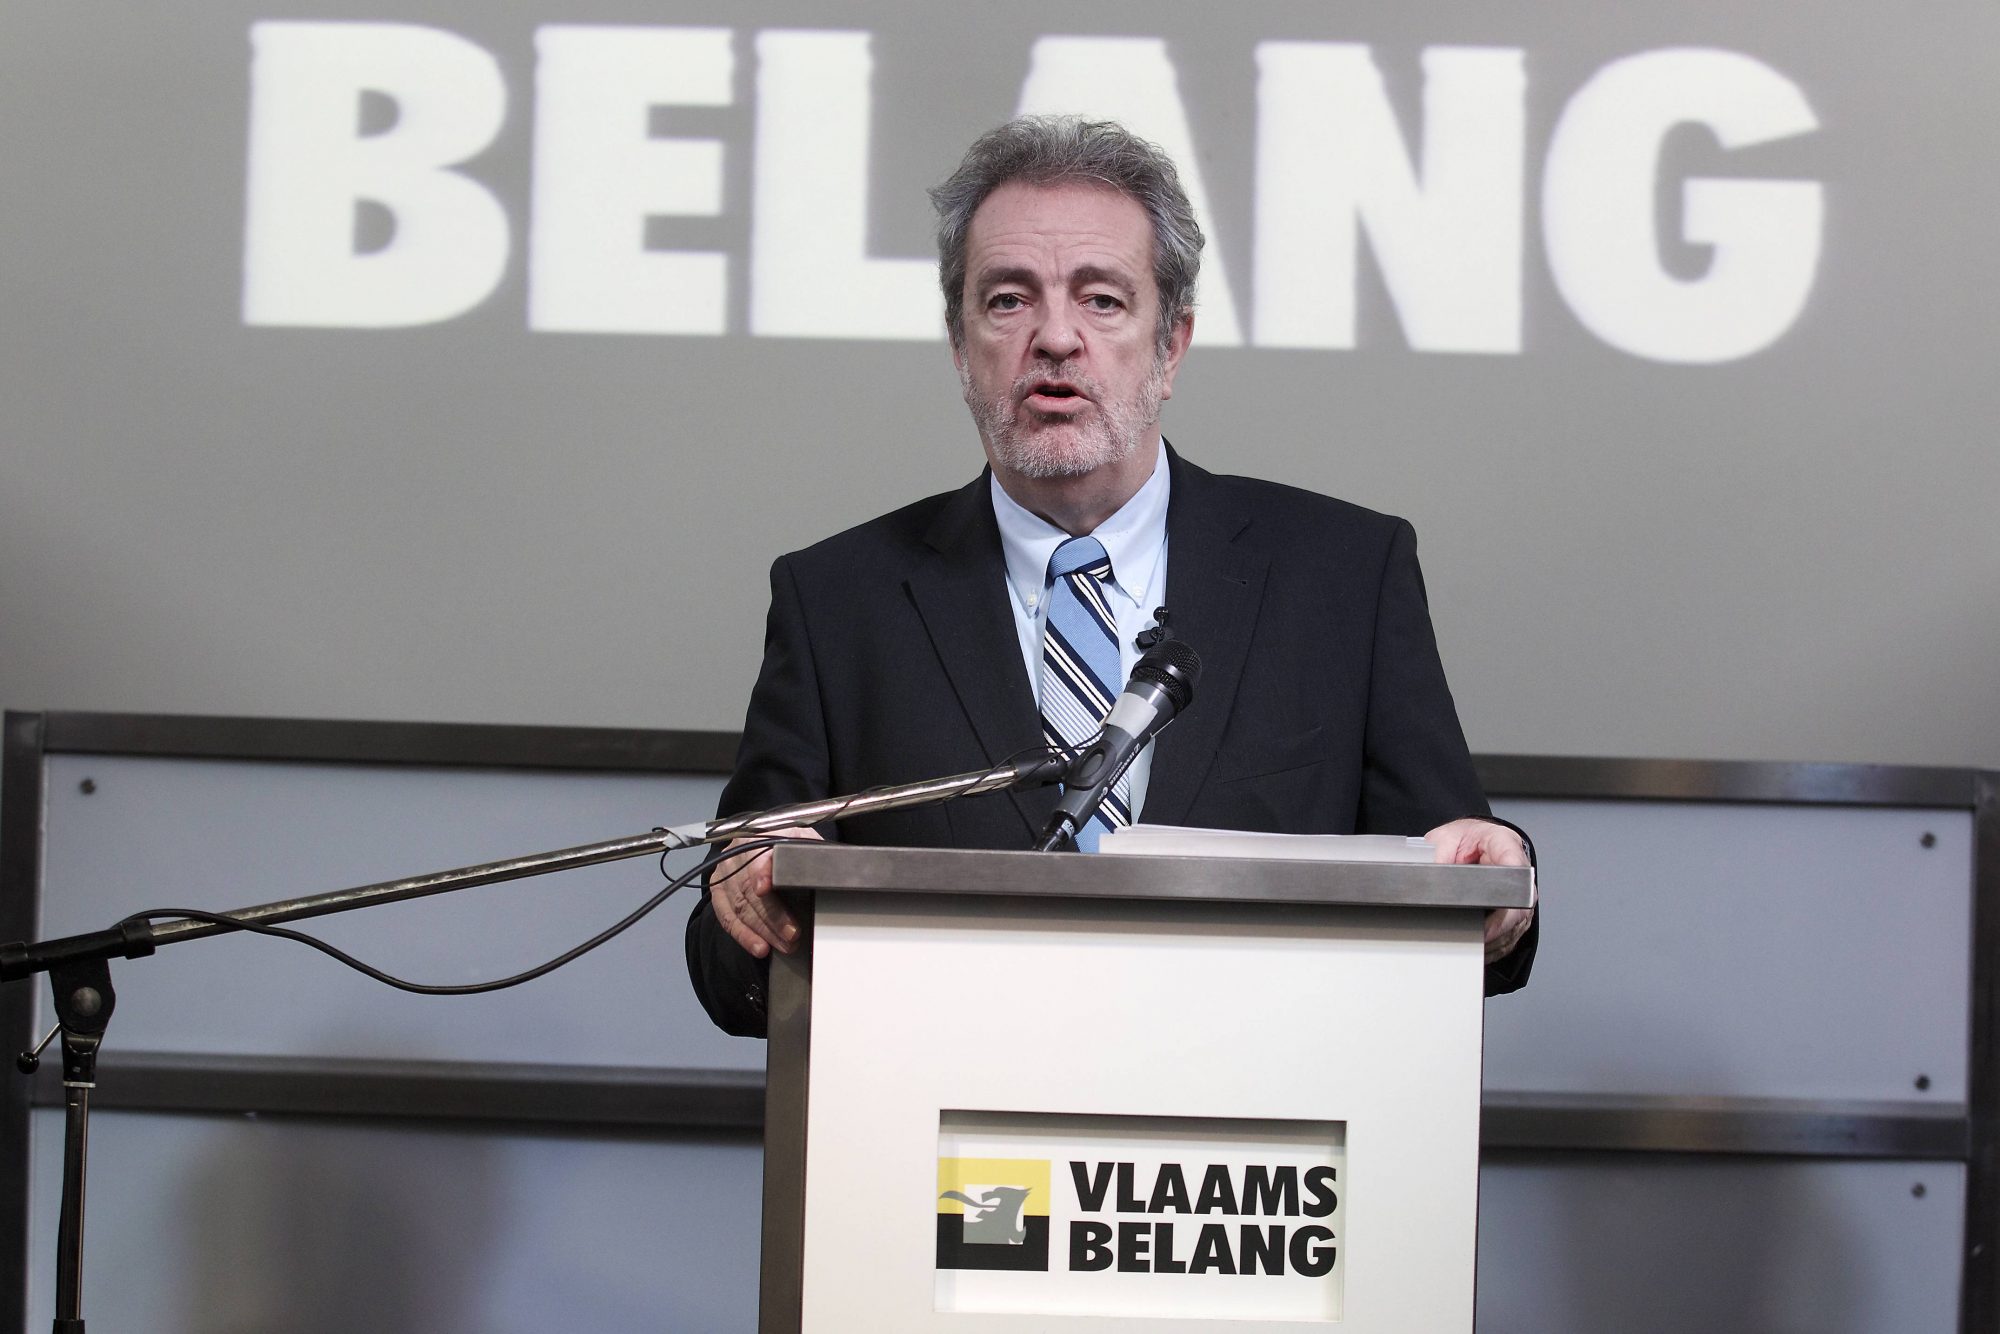 Gerolf Annemans, Vlaams Belang Fraktionsvorsitzender in der Kammer